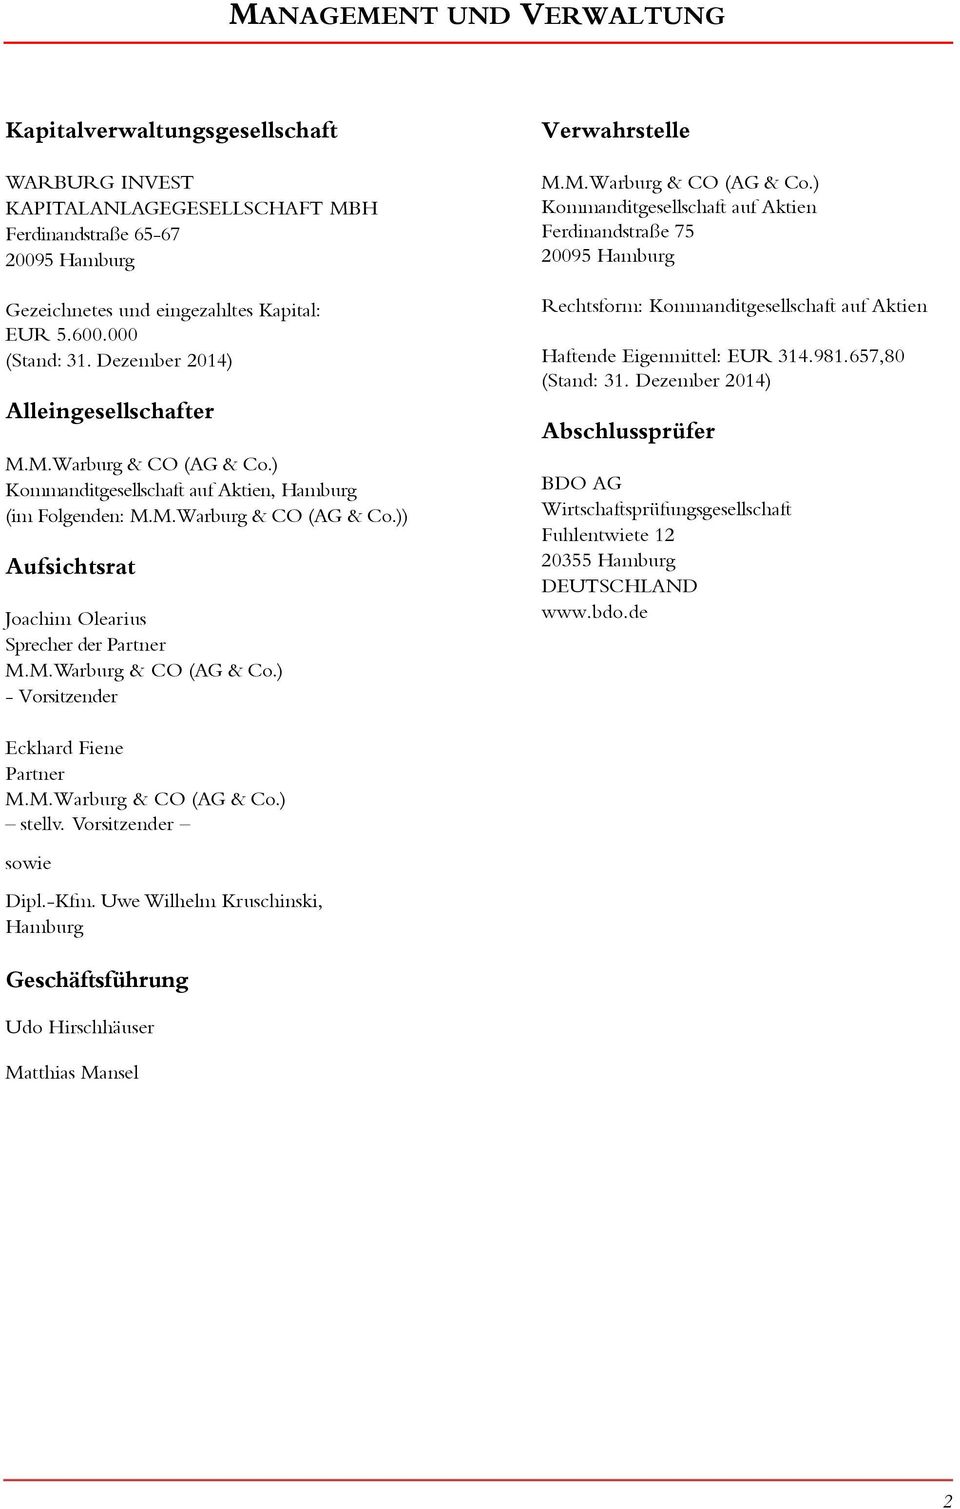 M.Warburg & CO (AG & Co.) - Vorsitzender Verwahrstelle M.M.Warburg & CO (AG & Co.) Kommanditgesellschaft auf Aktien Ferdinandstraße 75 295 Hamburg Rechtsform: Kommanditgesellschaft auf Aktien Haftende Eigenmittel: EUR 314.